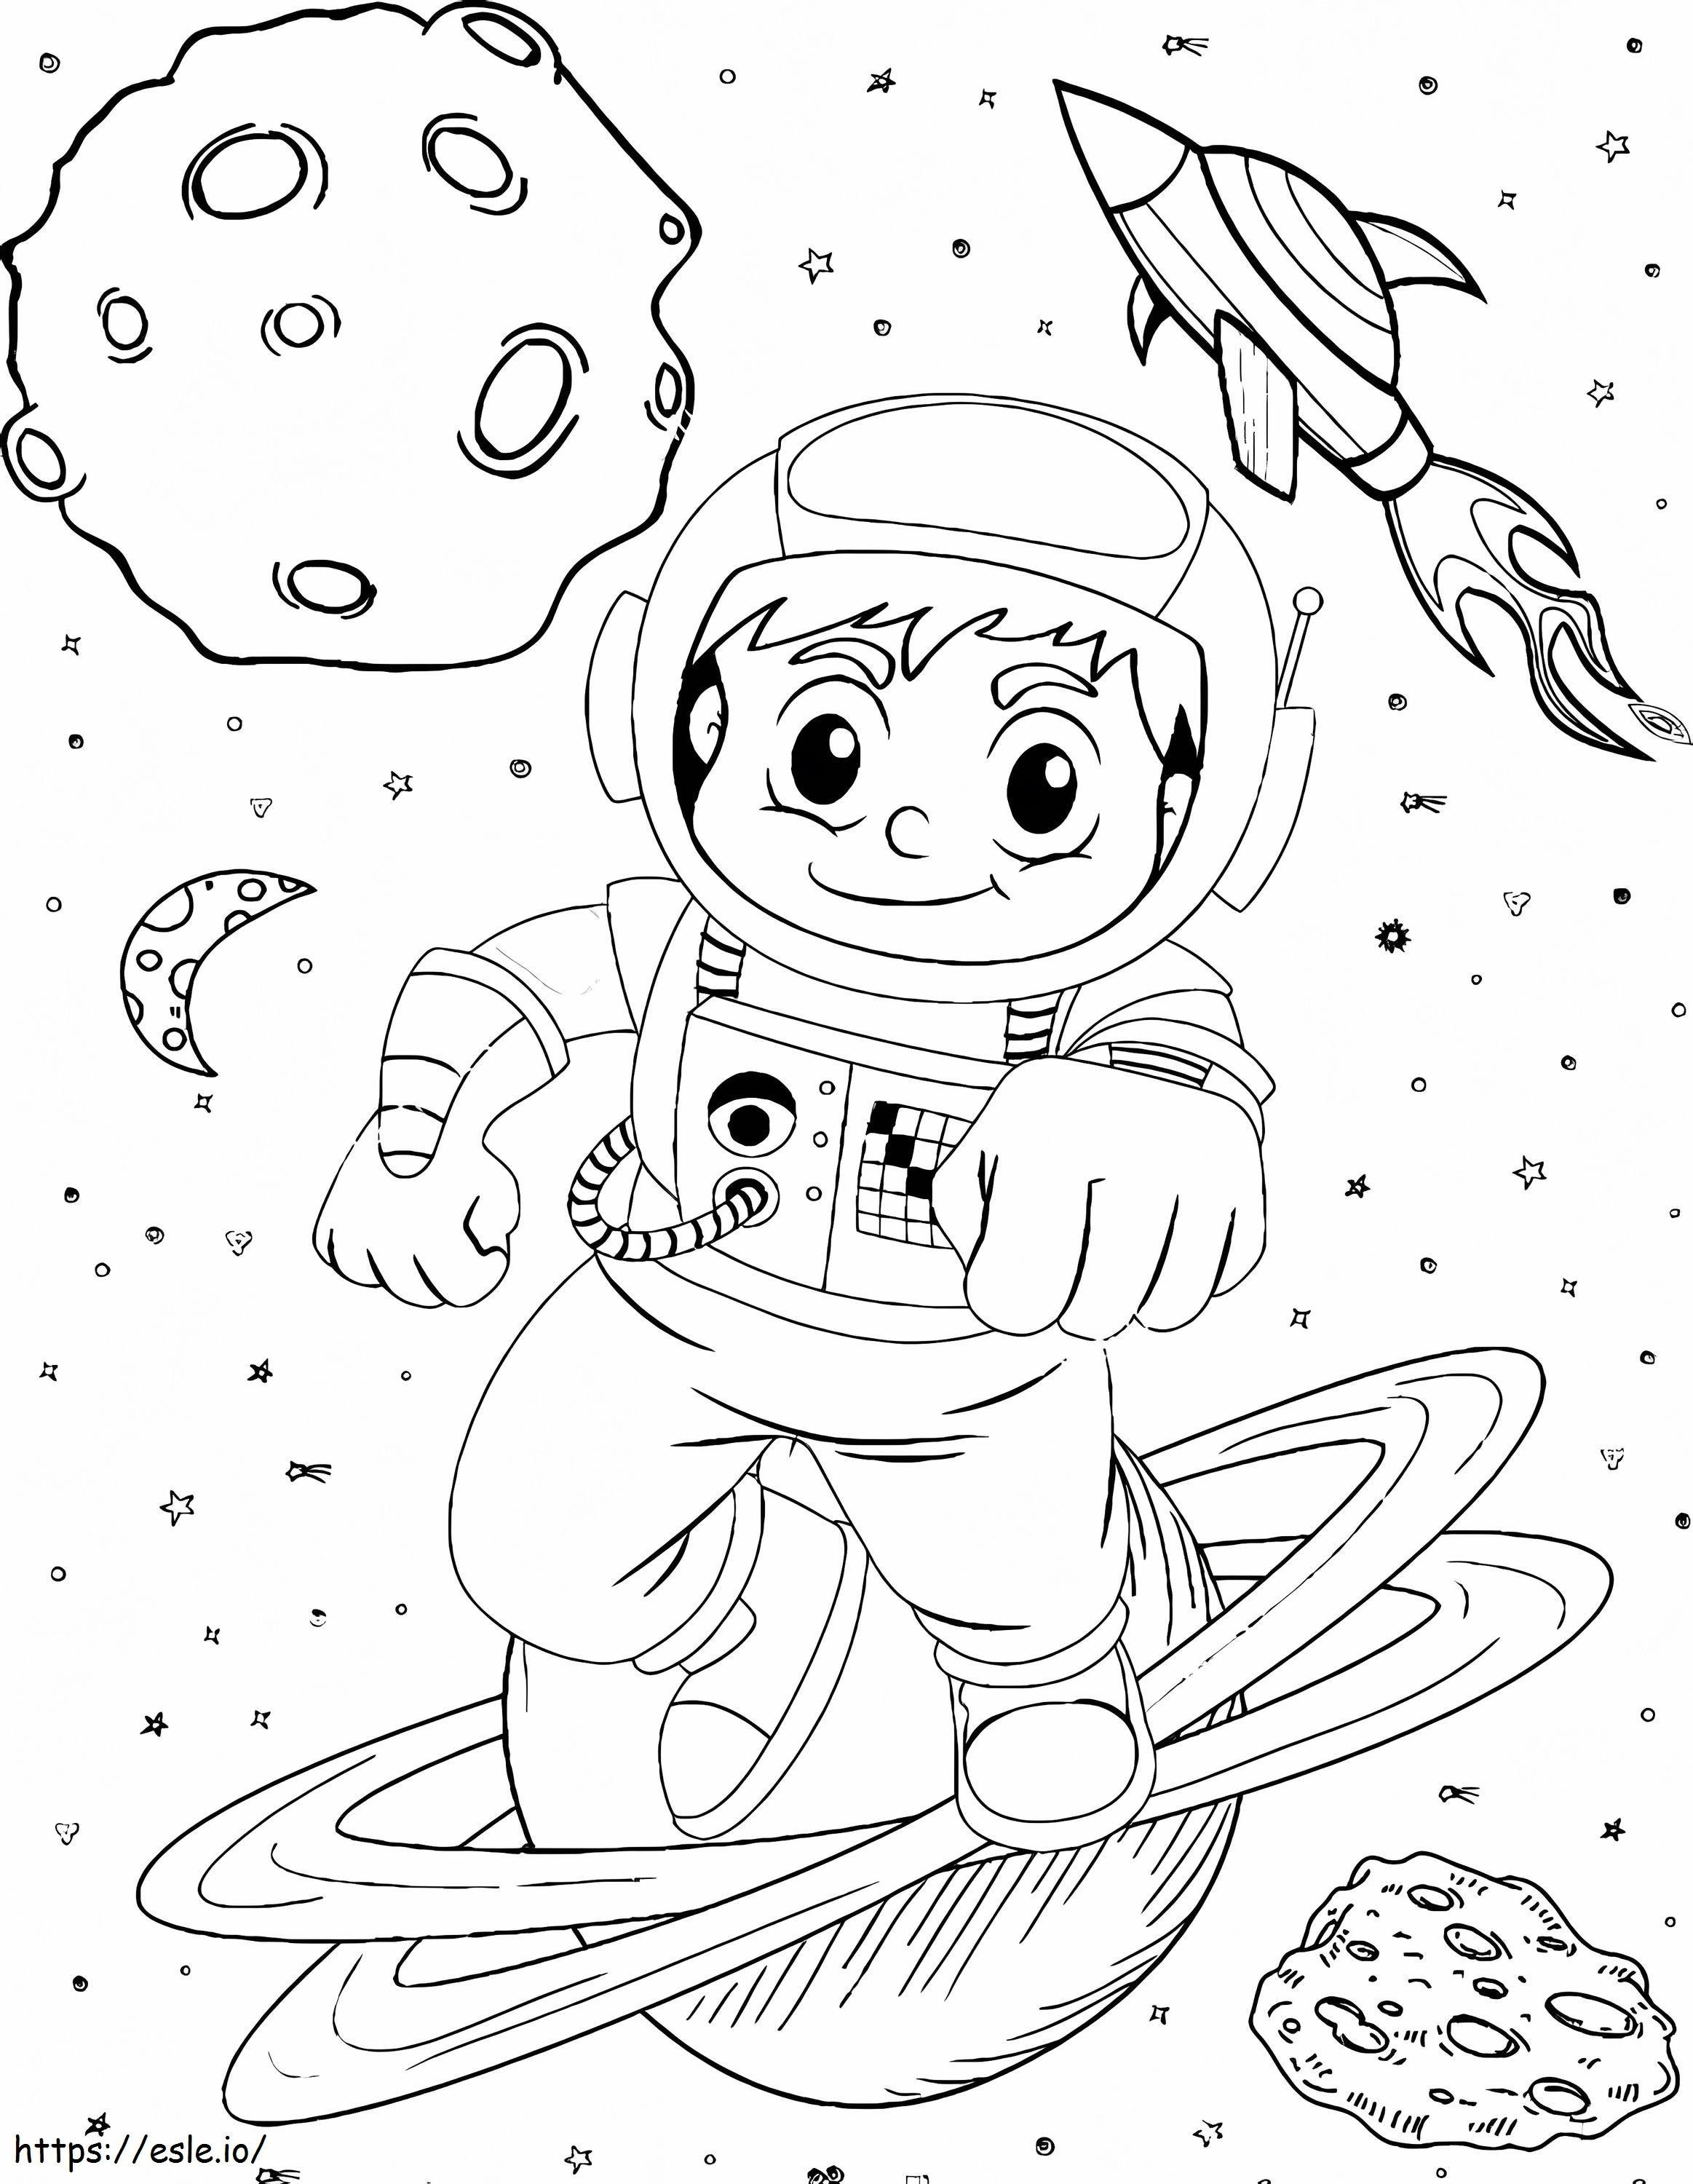 Cartoon astronaut de colorat